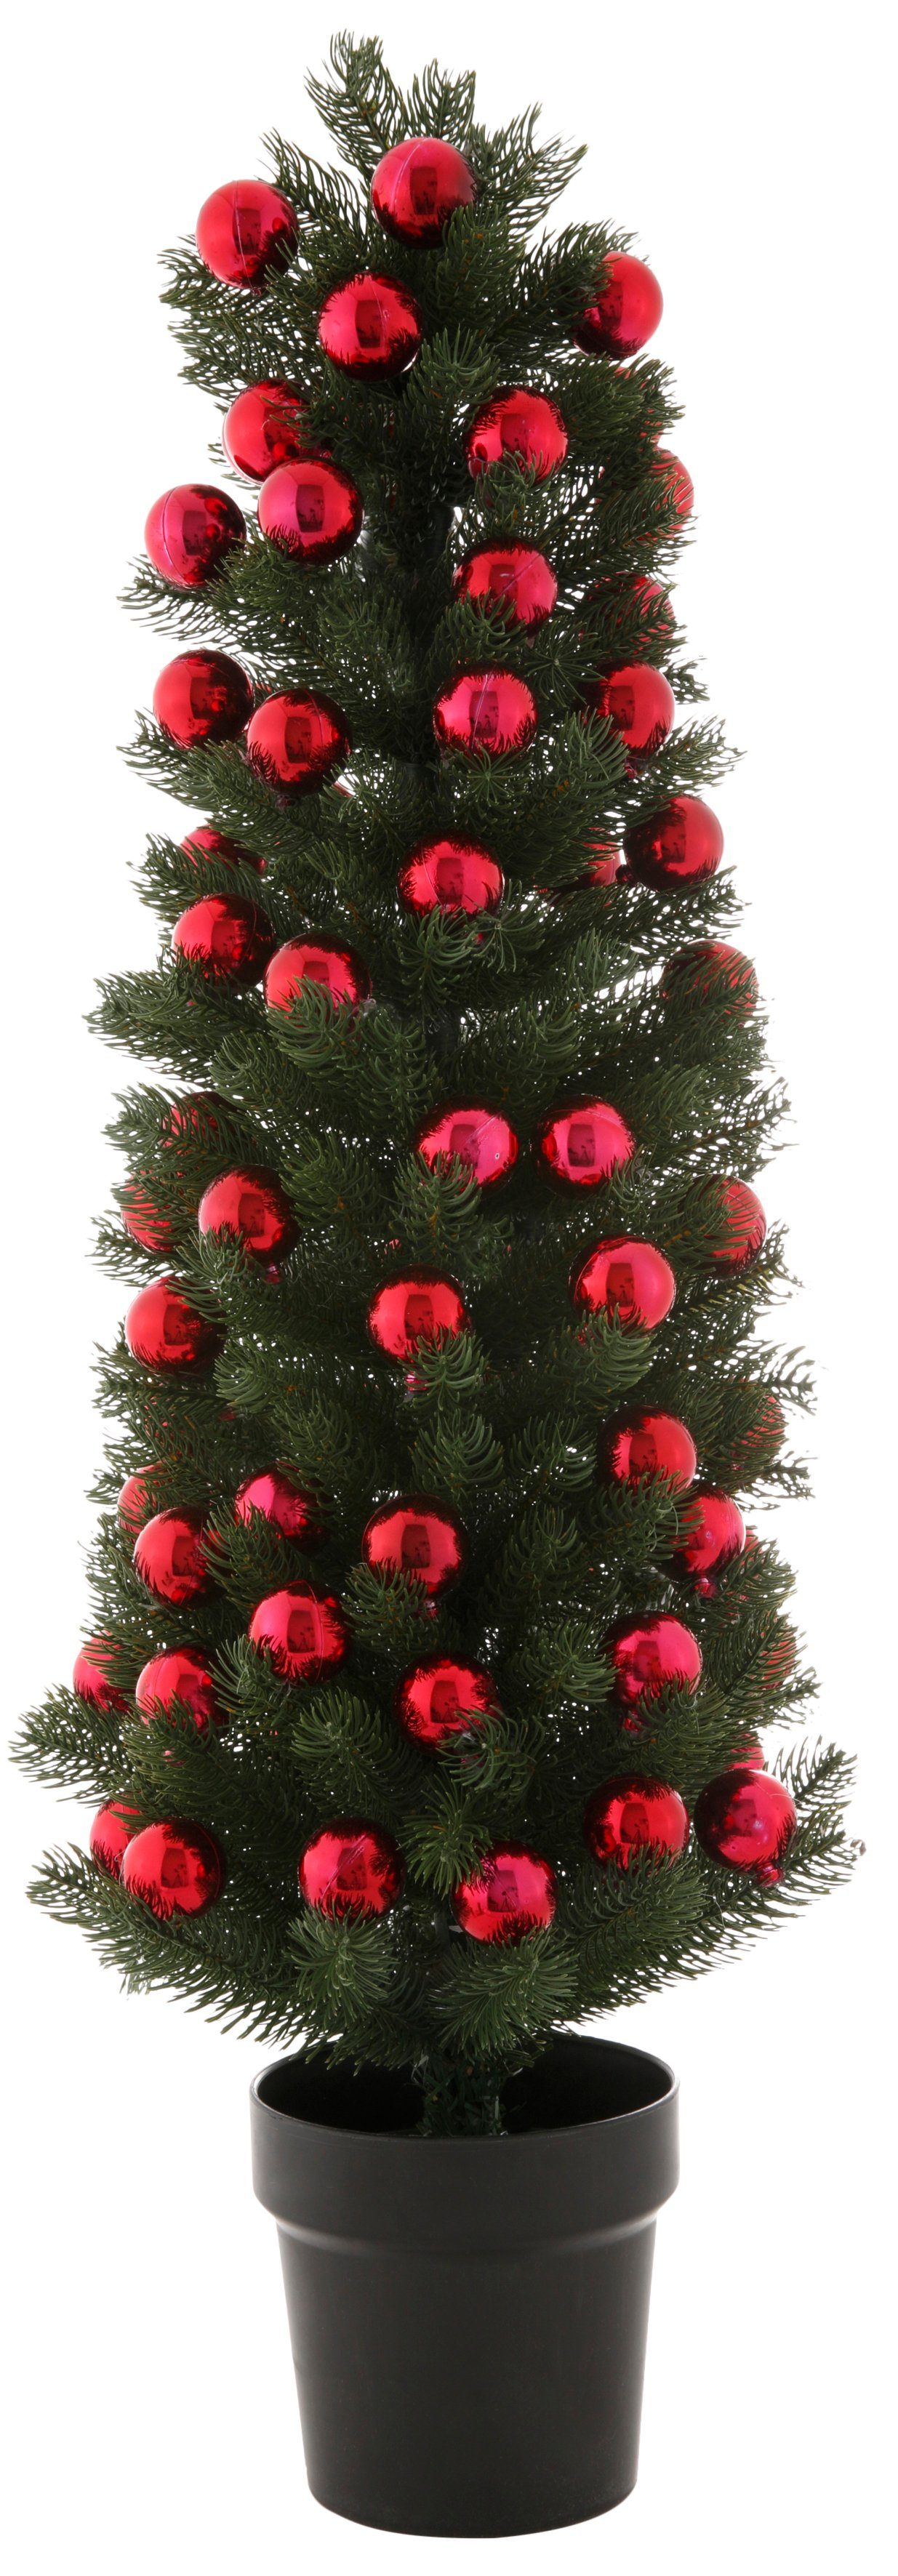 Weihnachtsdeko, Kugeln Tannenbaum, Weihnachtsbaum Möbel künstlicher mit Myflair Topf, Künstlicher Accessoires im & roten Christbaum,